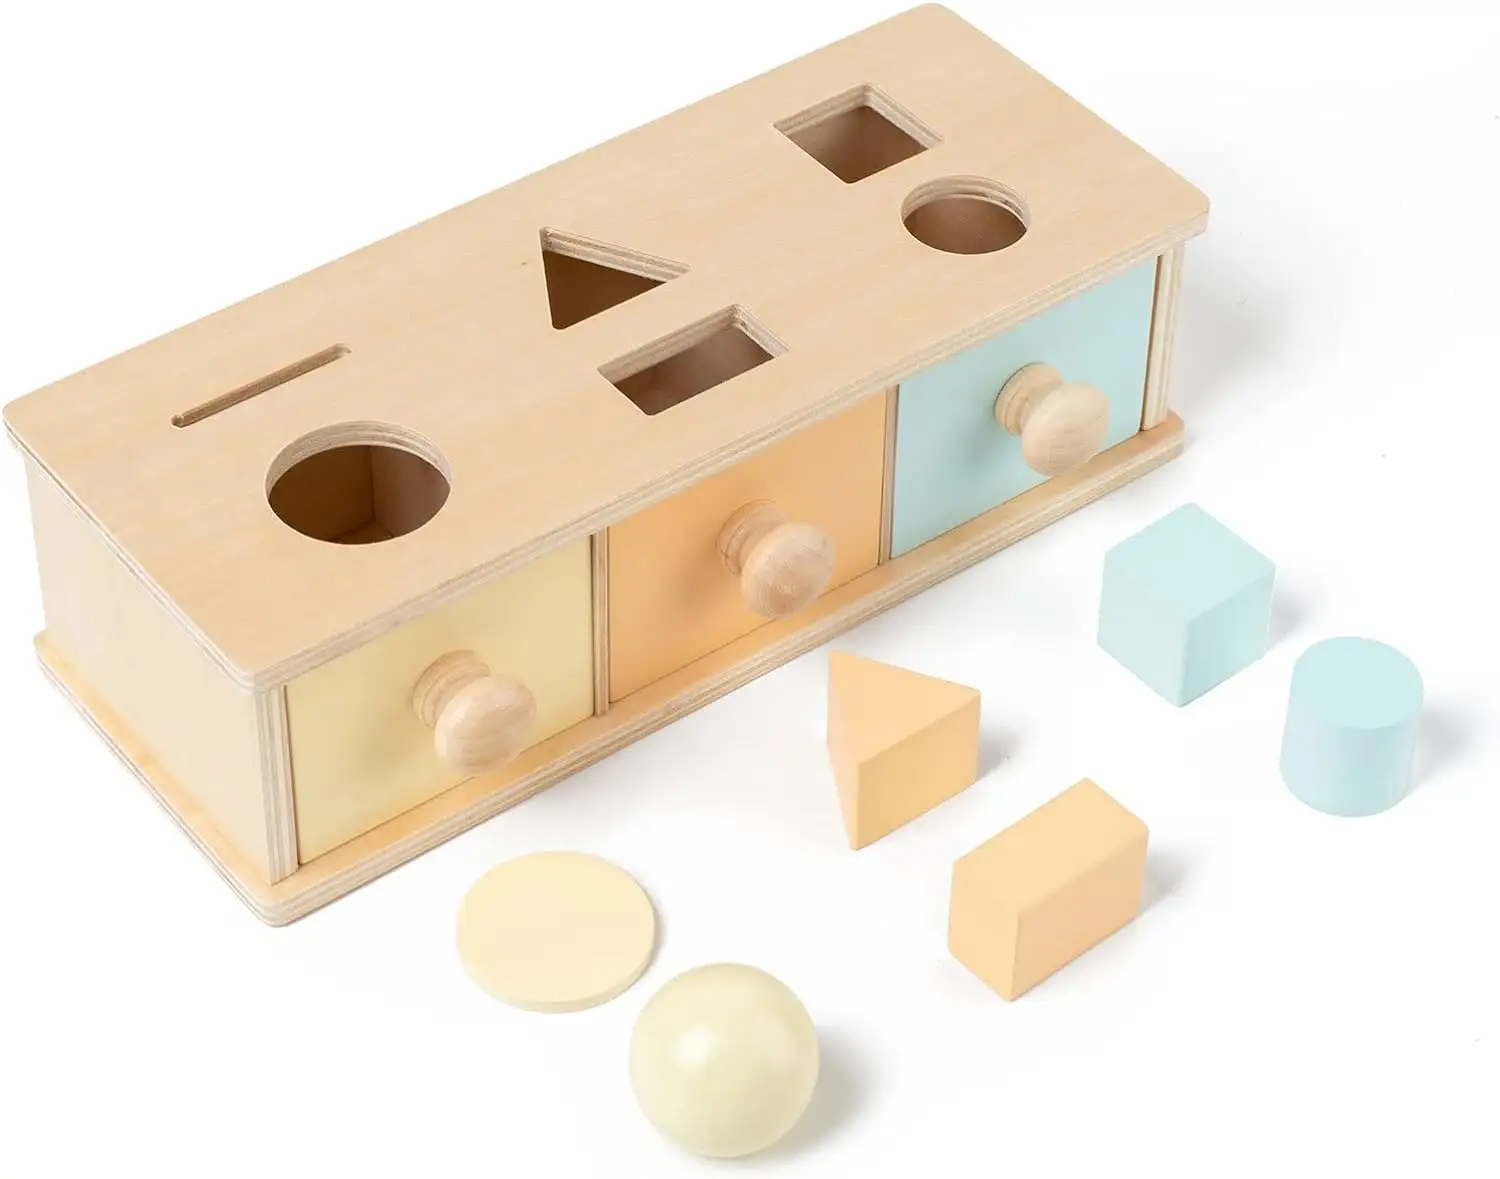 ألعاب تعليمية مونتيسوري للأطفال بعمر 1 أو 2 أو 3 سنوات، قطع أحجية خشبية متعددة الملونة كهدية لعيد الميلاد